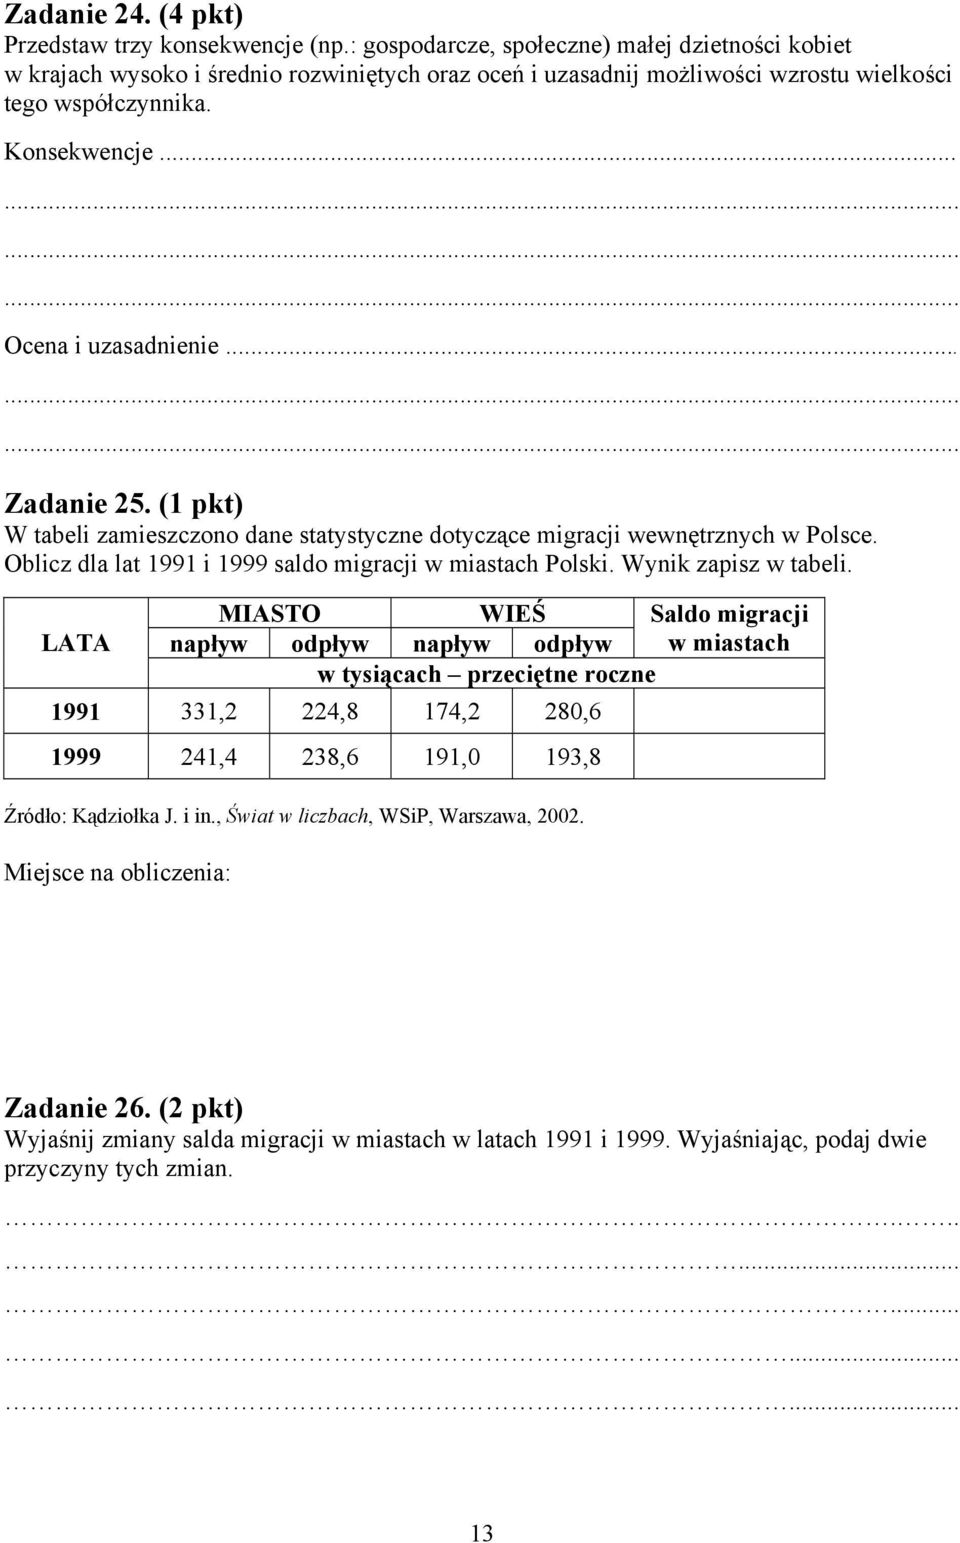 .. Zadanie 25. (1 pkt) W tabeli zamieszczono dane statystyczne dotyczące migracji wewnętrznych w Polsce. Oblicz dla lat 1991 i 1999 saldo migracji w miastach Polski. Wynik zapisz w tabeli.